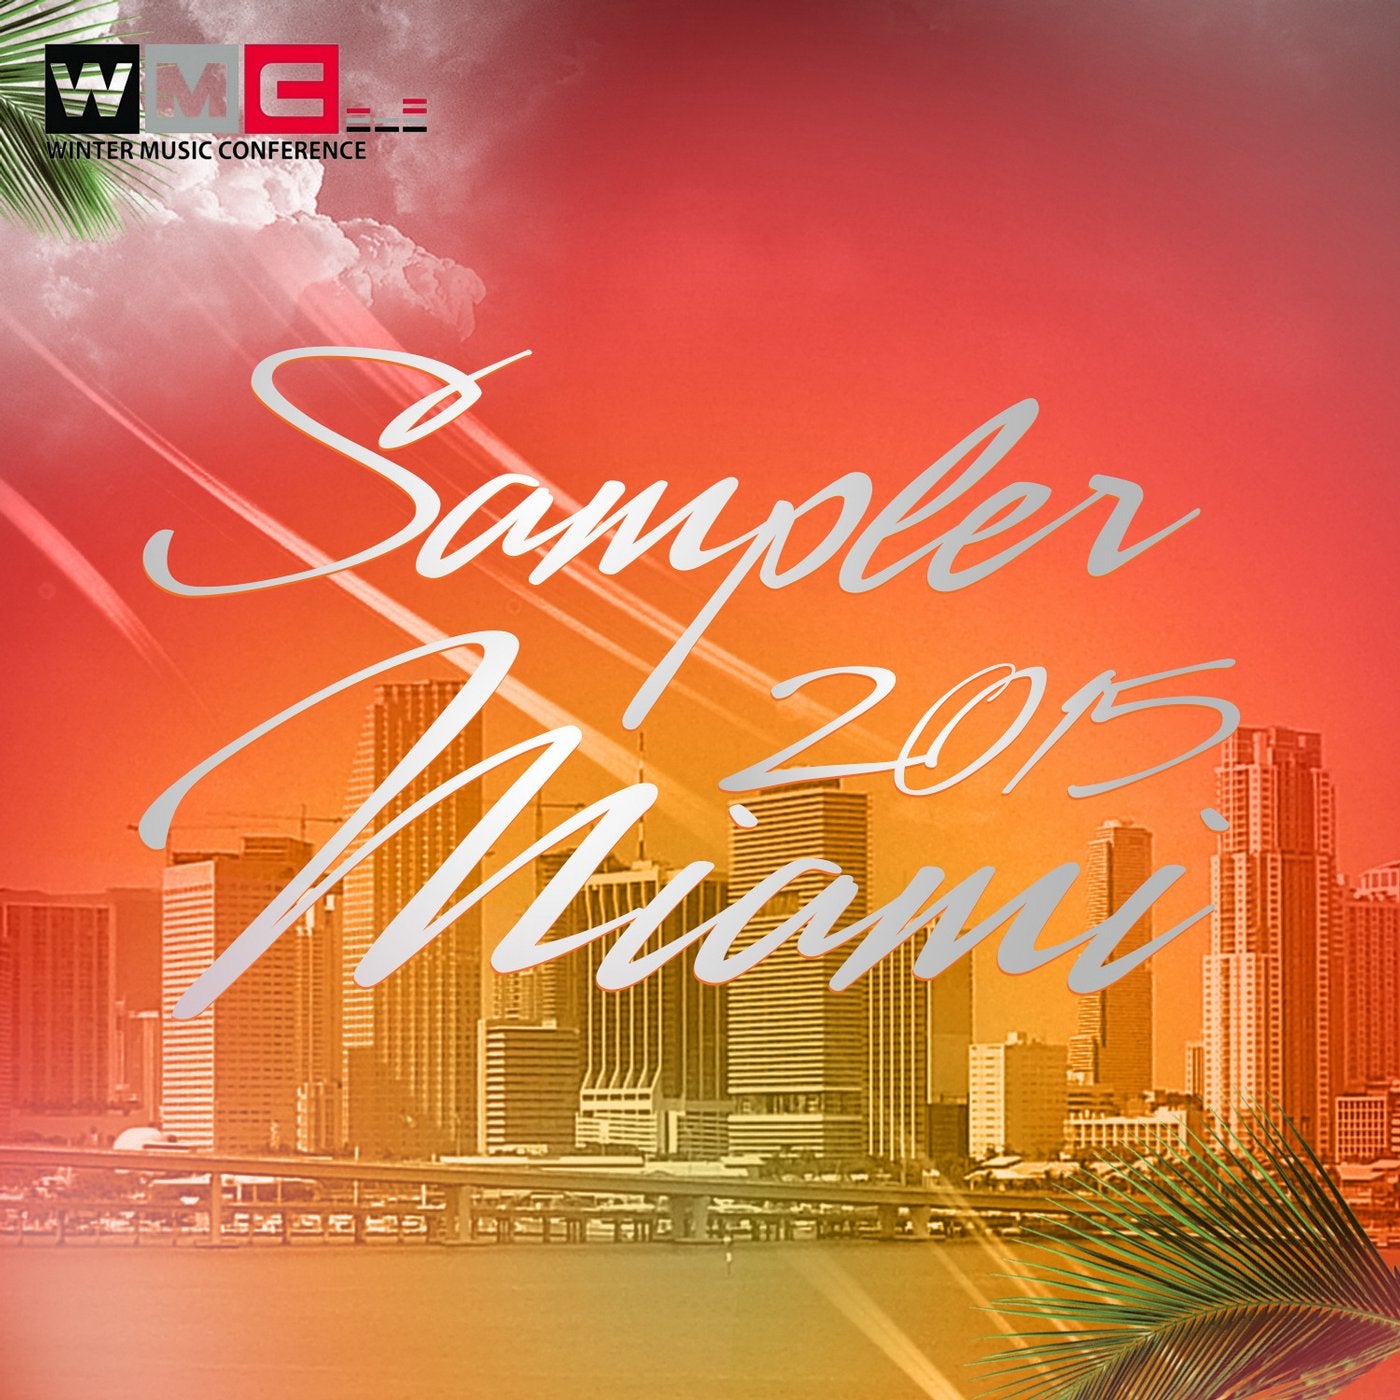 WMC Sampler 2015 Miami